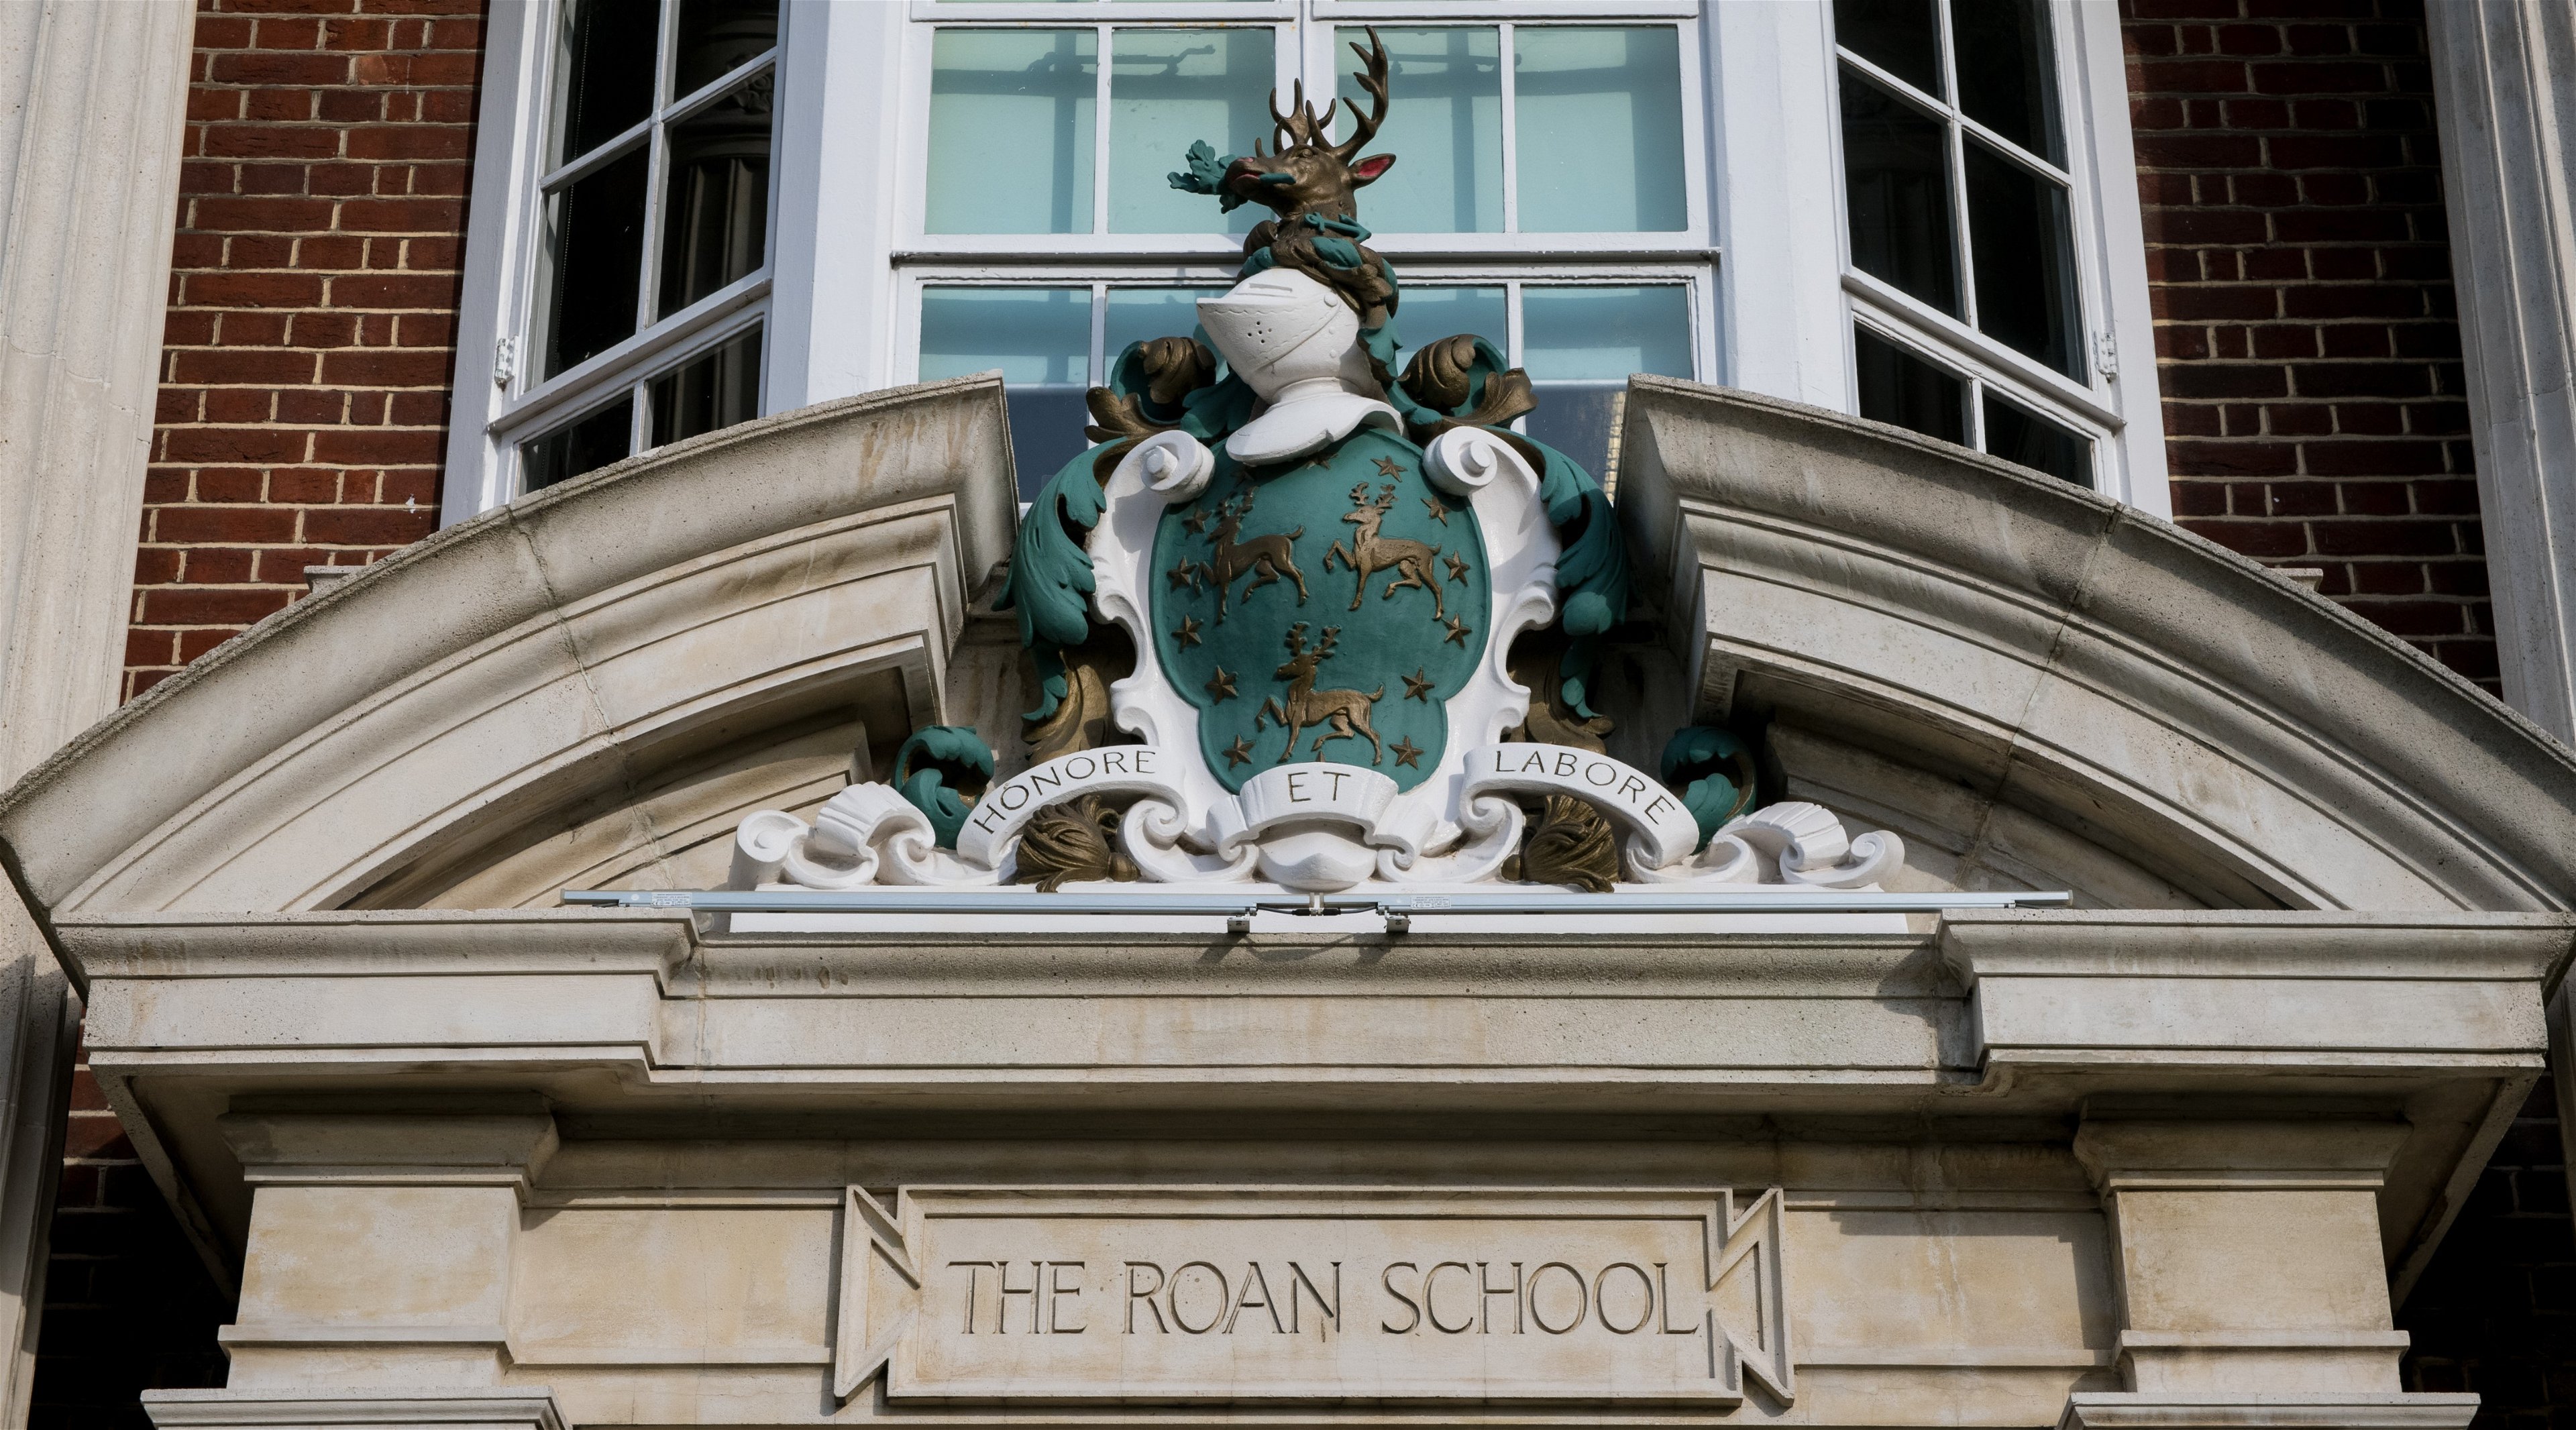 John Roan School Association